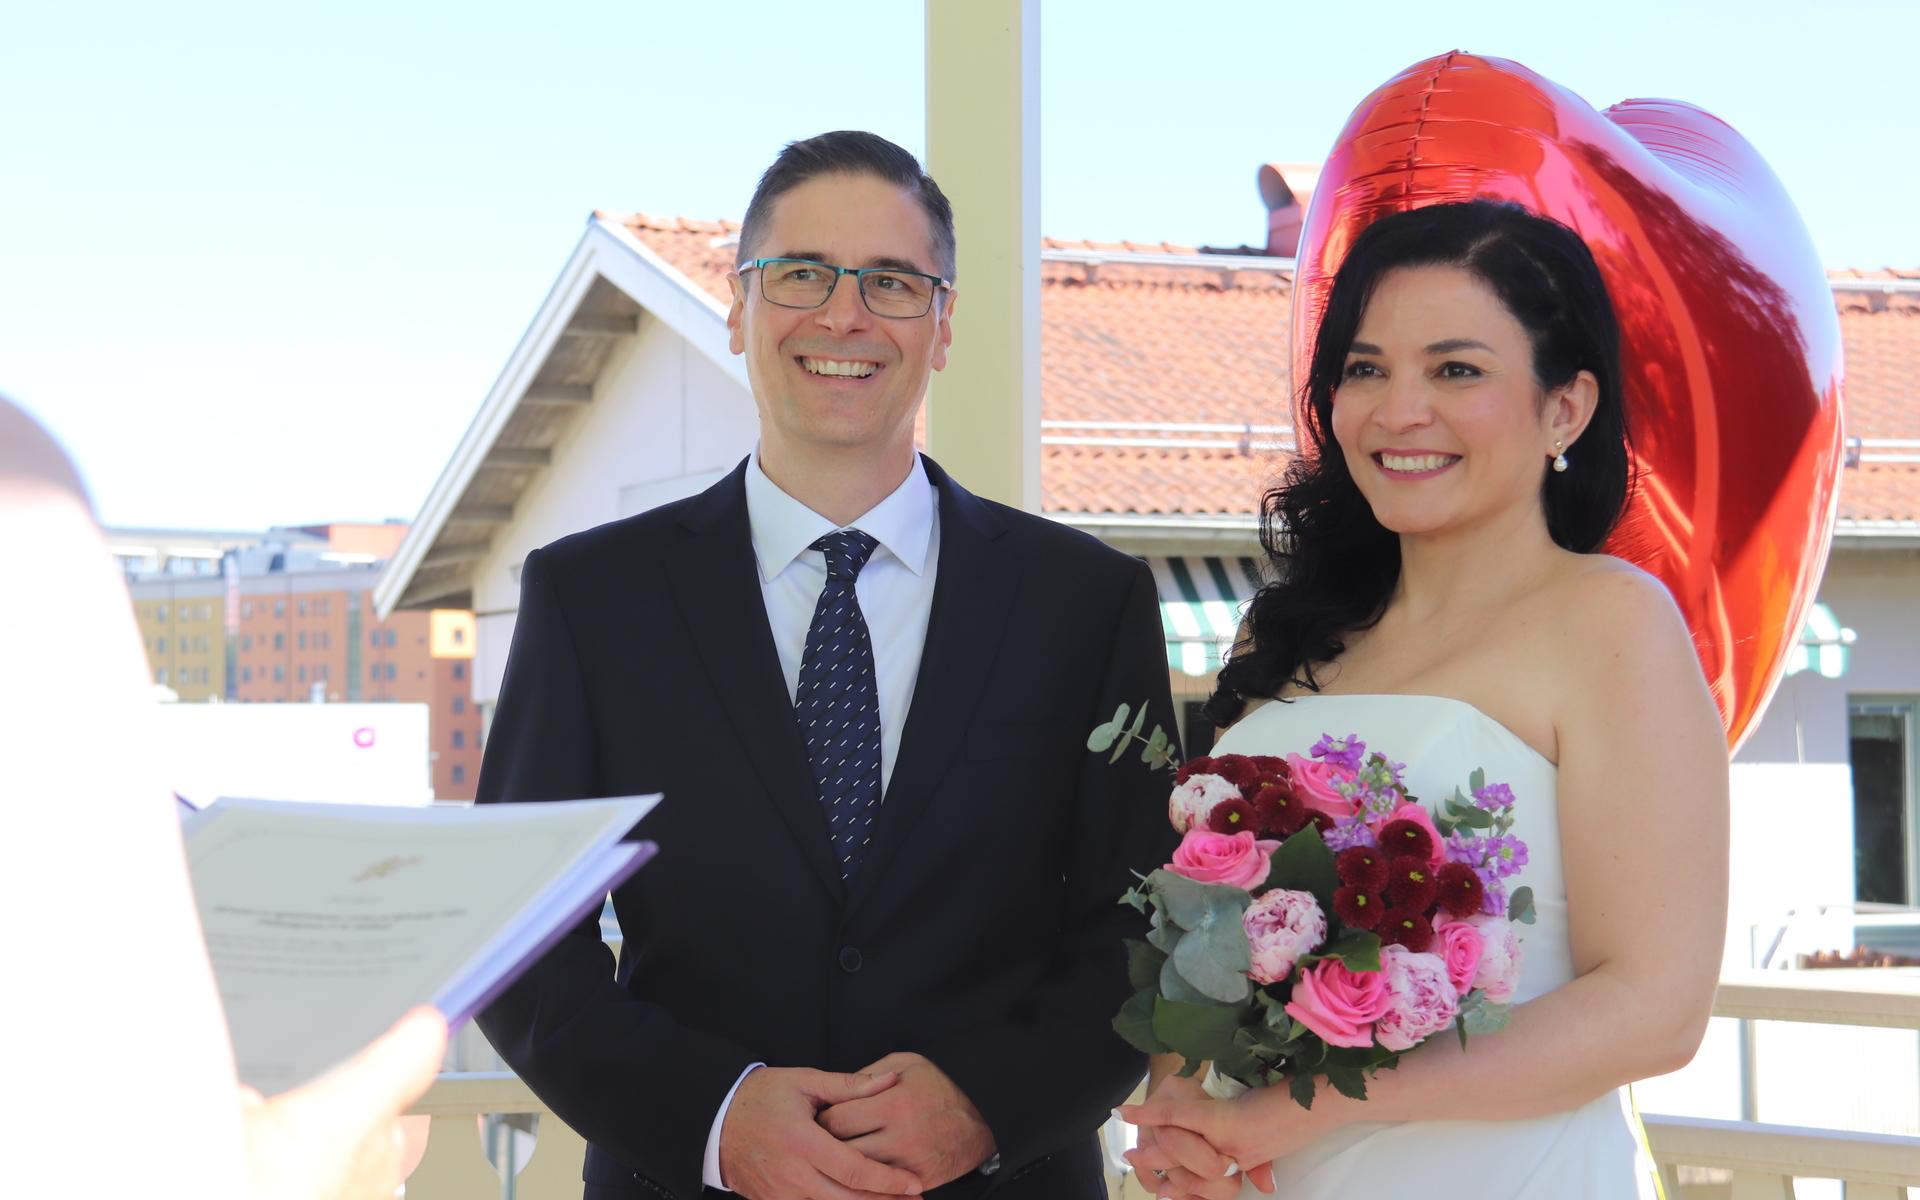 Goran Puretic och Flavia Mariani gifte sig i Björckska villan under söndagen.